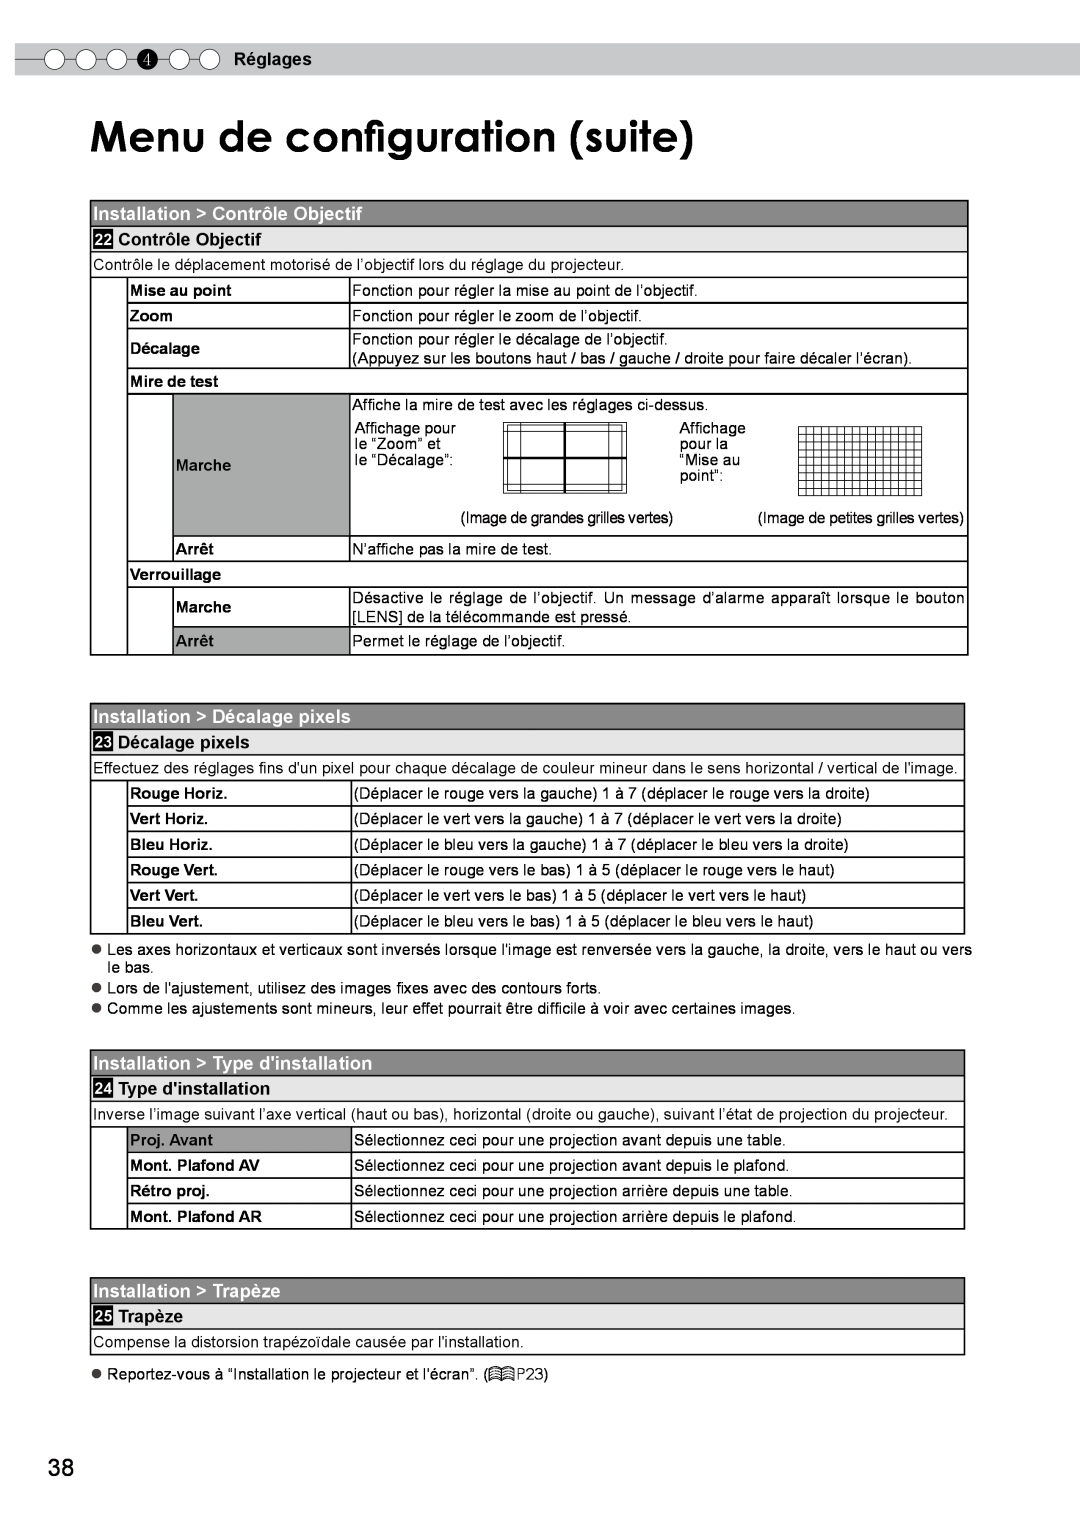 JVC DLA-HD750 manual Menu de configuration suite, Installation Contrôle Objectif, Installation Décalage pixels, 4 Réglages 